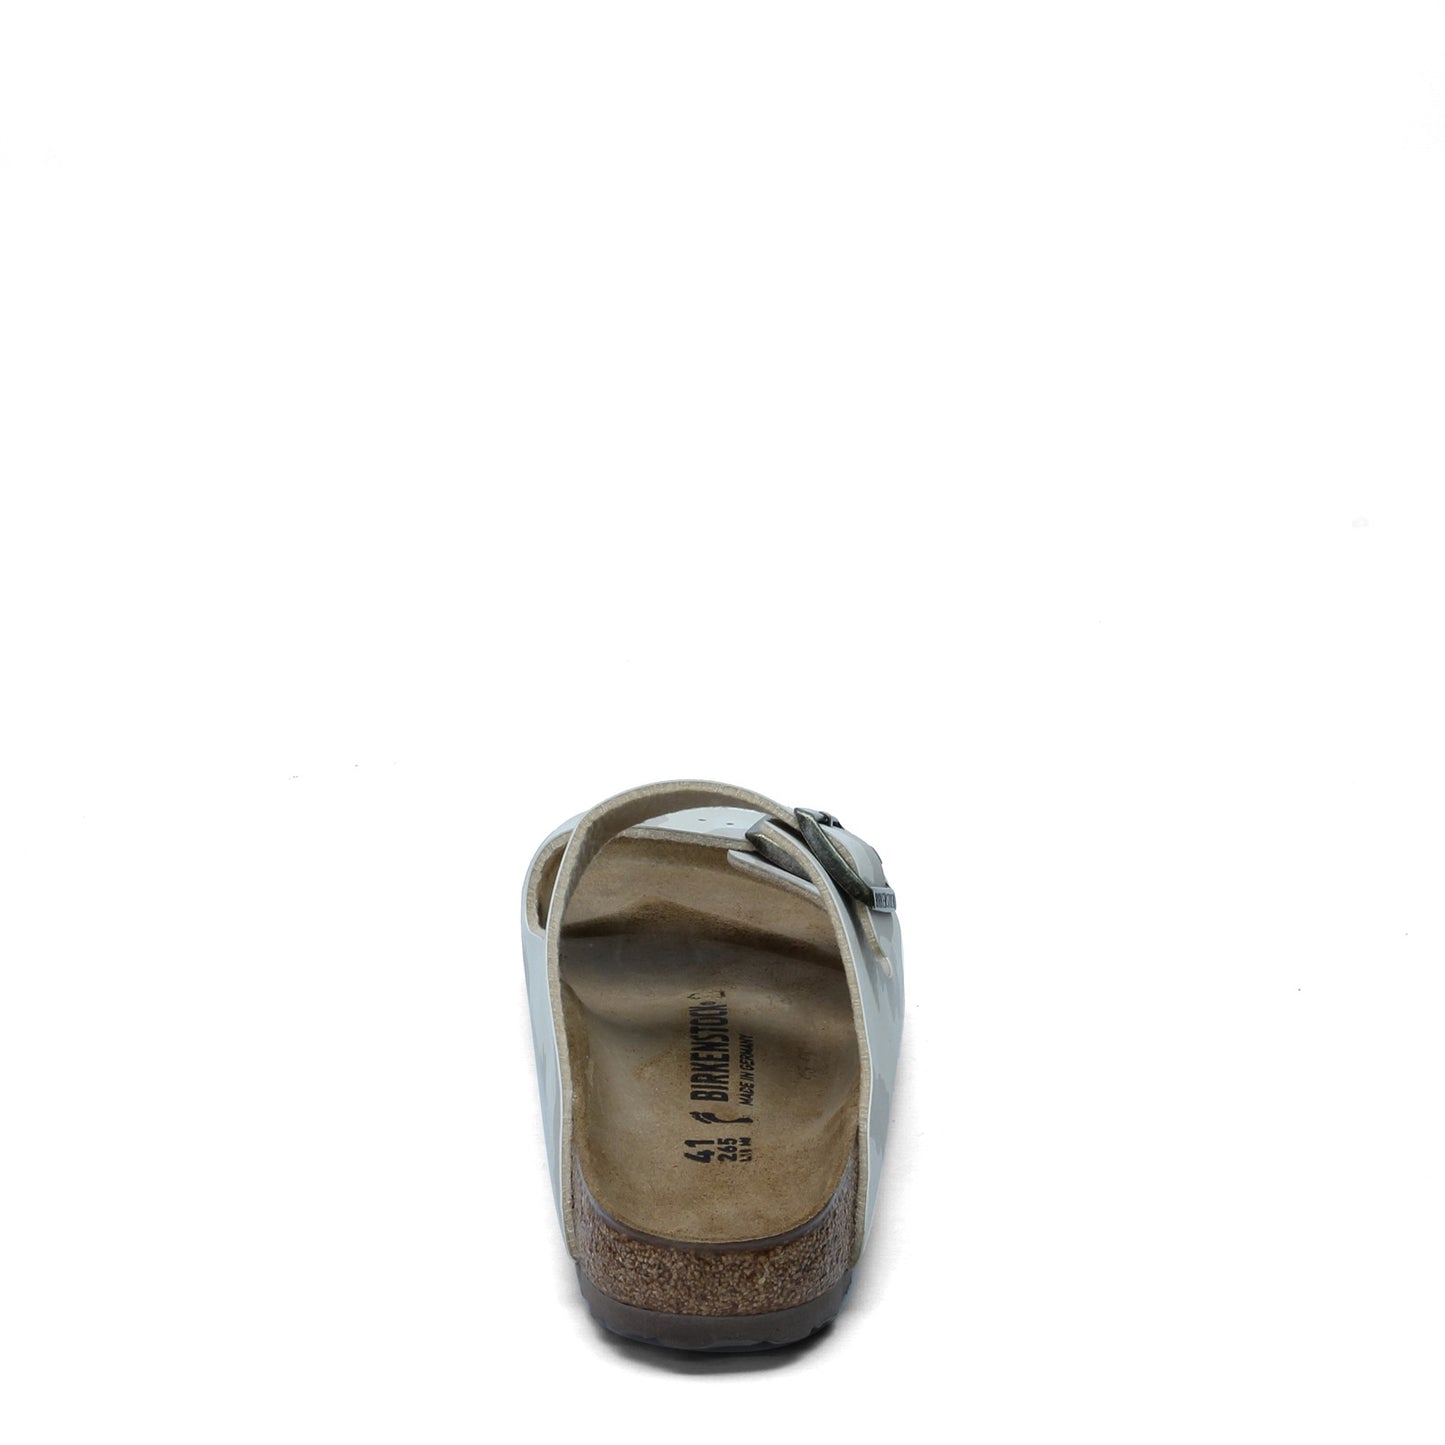 Peltz Shoes  Women's Birkenstock Arizona Birkoflor Sandal - Narrow Width BEIGE MULTI 1016 791 N